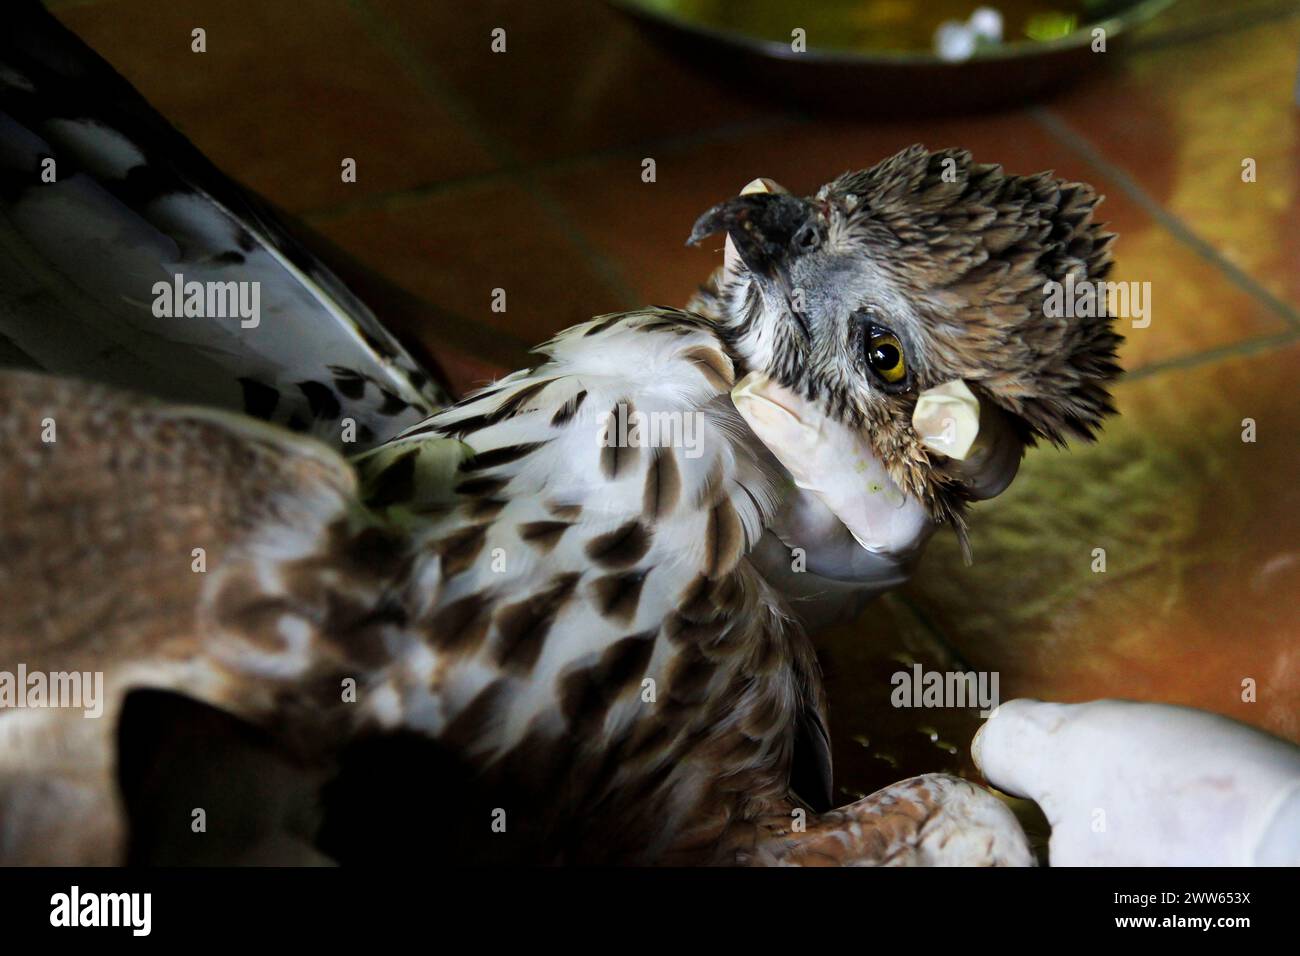 Hawk Eagle ou Spizaetus cirrhatus (Nisaetus cirrhatus) reçoit des soins de santé au Wildlife Rescue Center. Banque D'Images